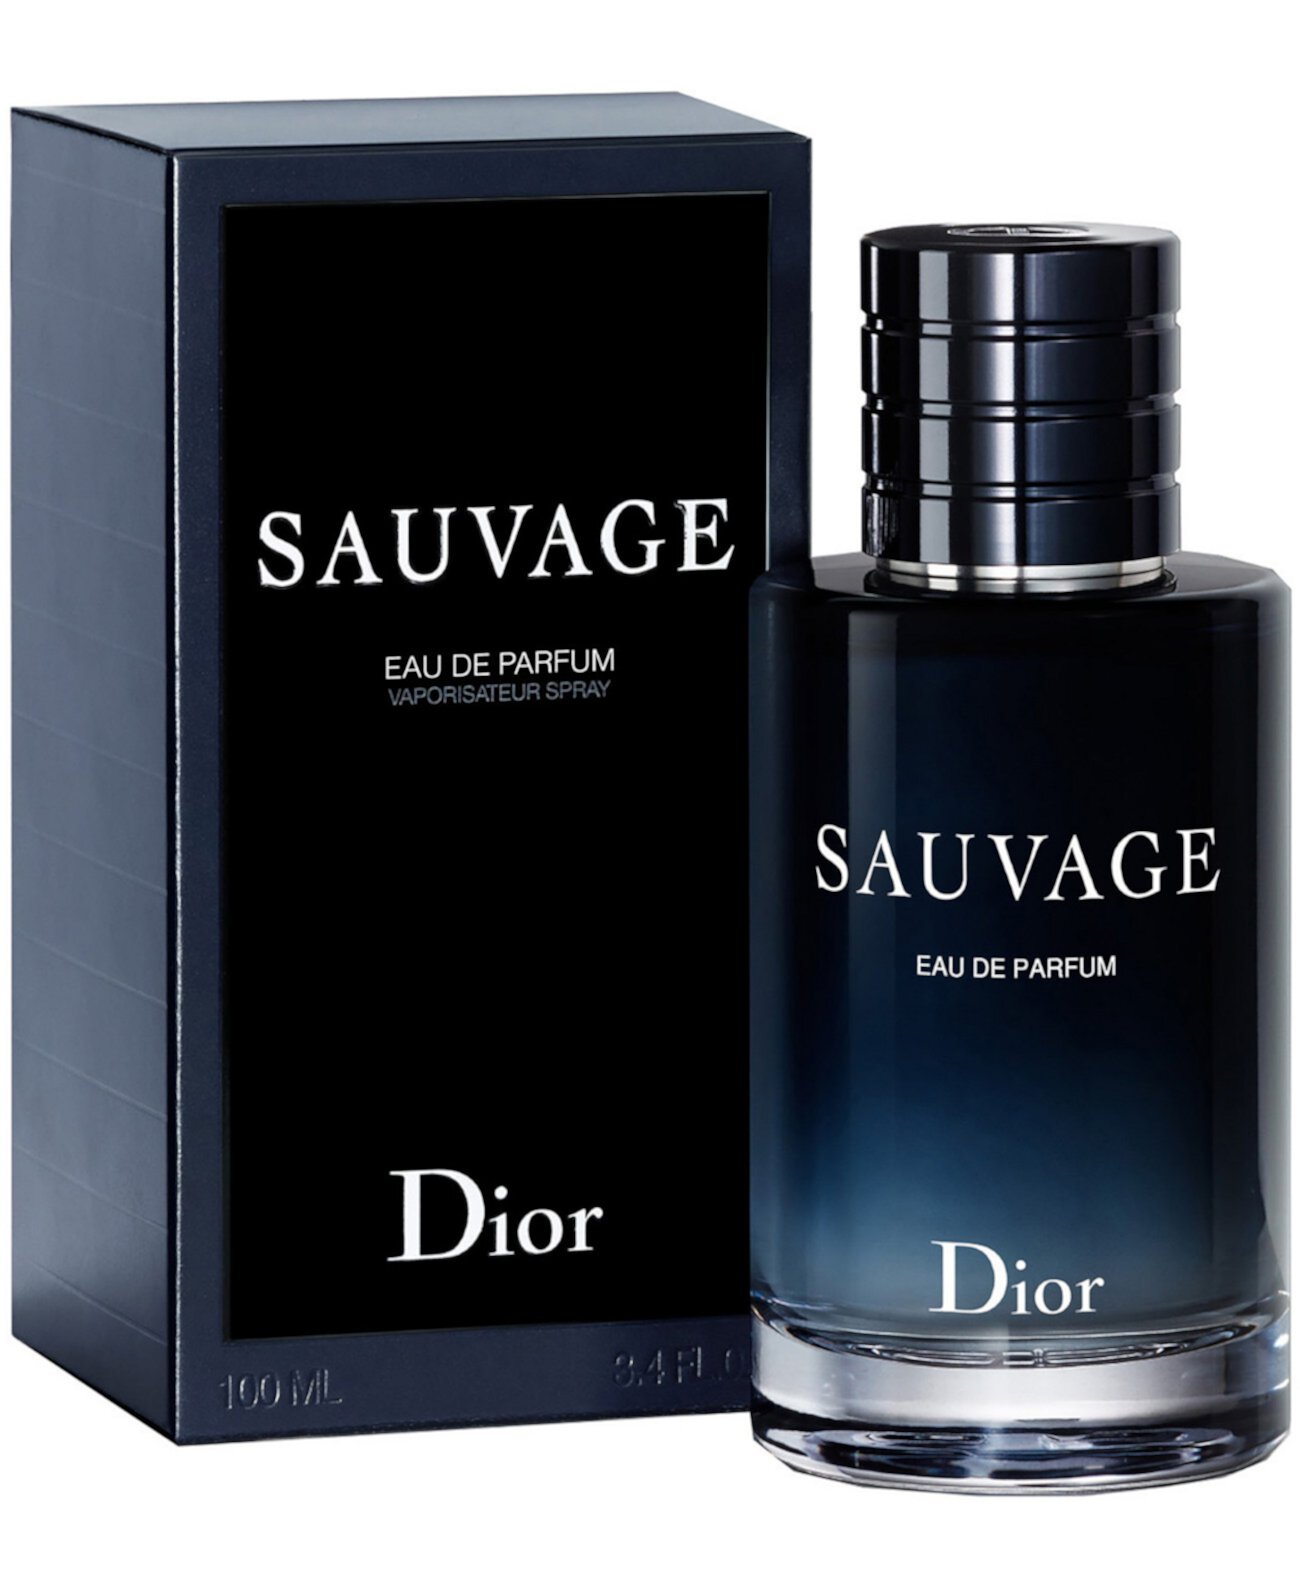 Мужской спрей Sauvage Eau de Parfum, 2 унции. Dior